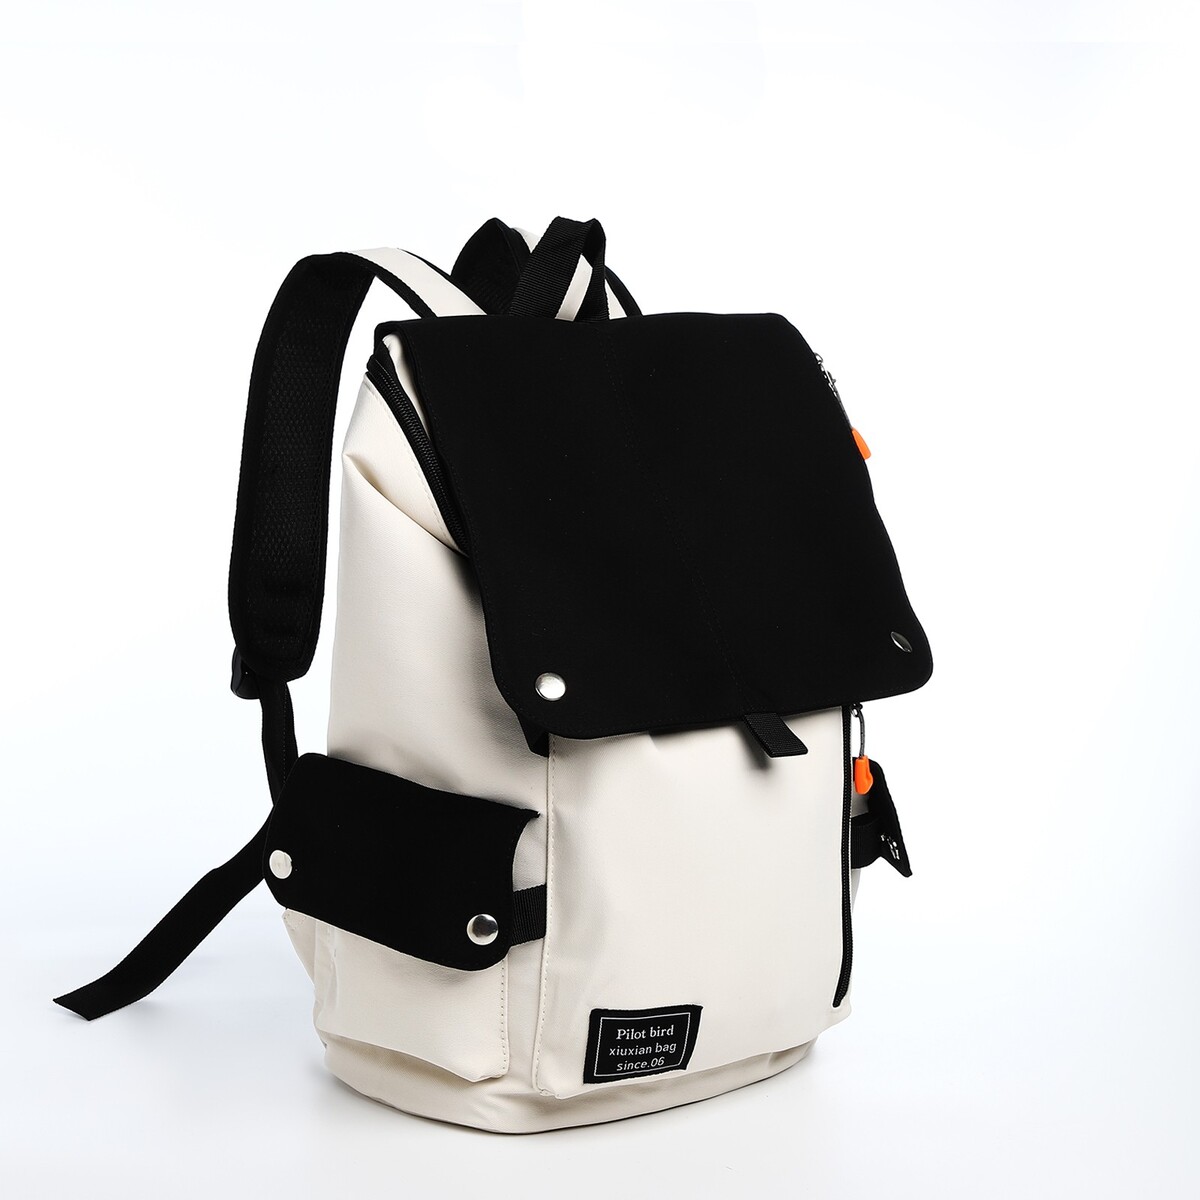 Рюкзак на молнии, 5 наружных кармана, цвет бежевый/черный рюкзак детский на молнии 3 наружных кармана бежевый